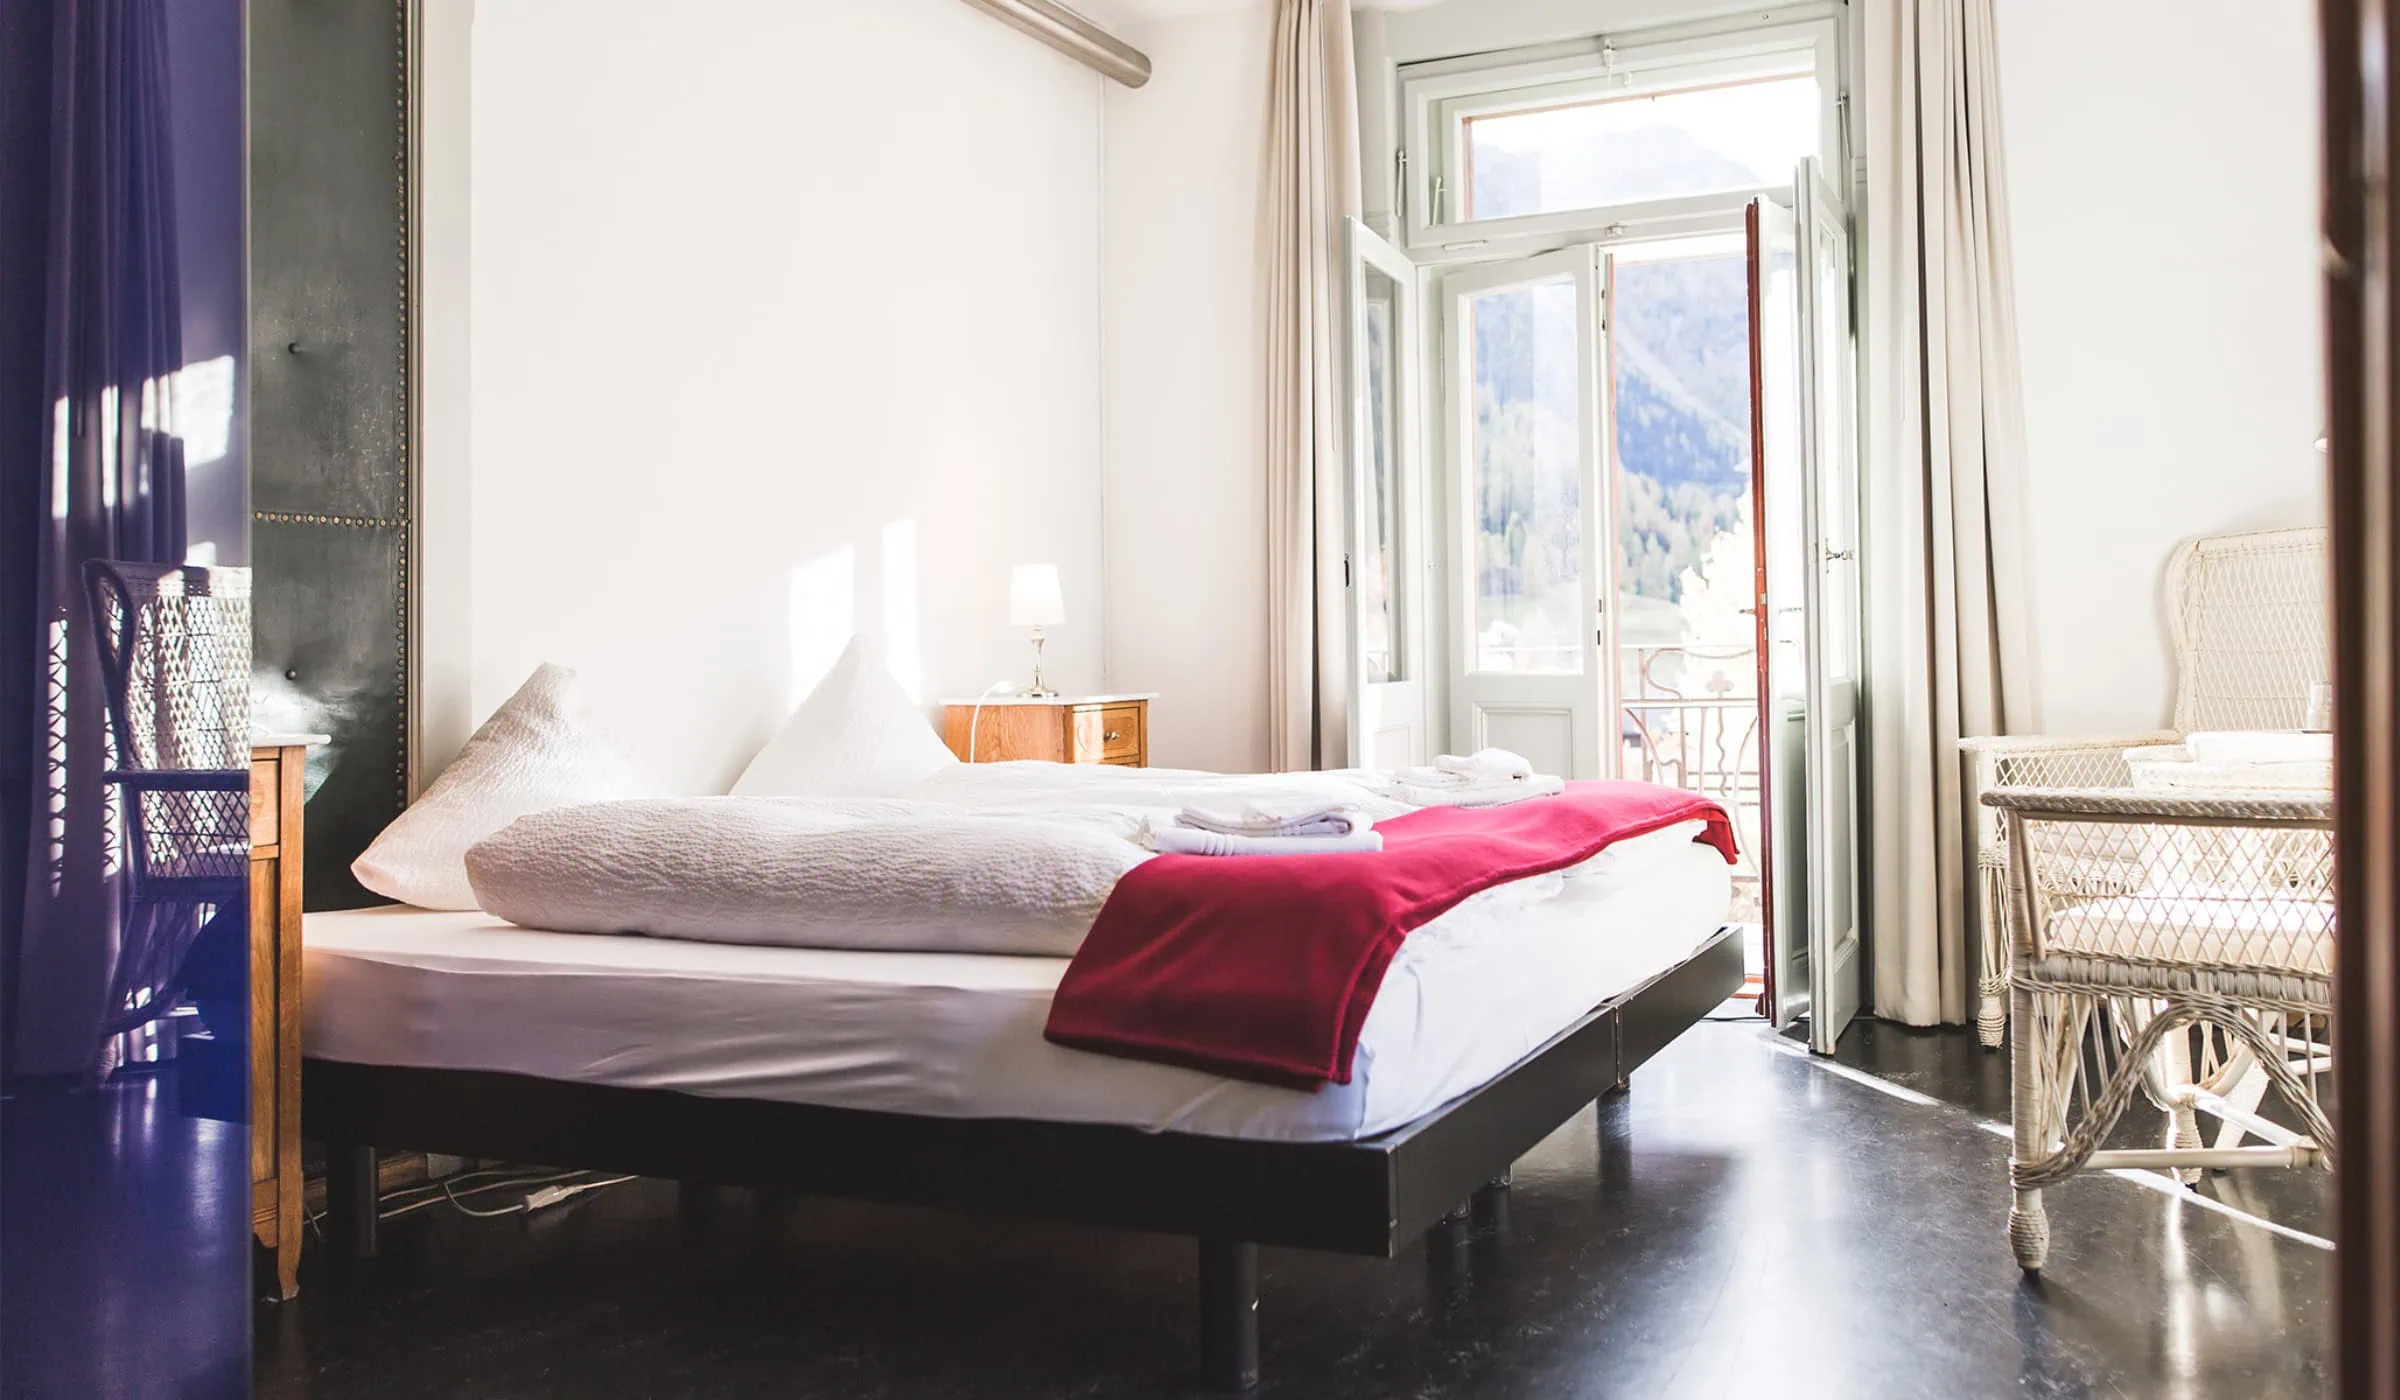 Urlaubstipp Für Familien Von Good Travel: Zimmer Im Kurhaus Bergün In Graubünden, Schweiz // Himbeer